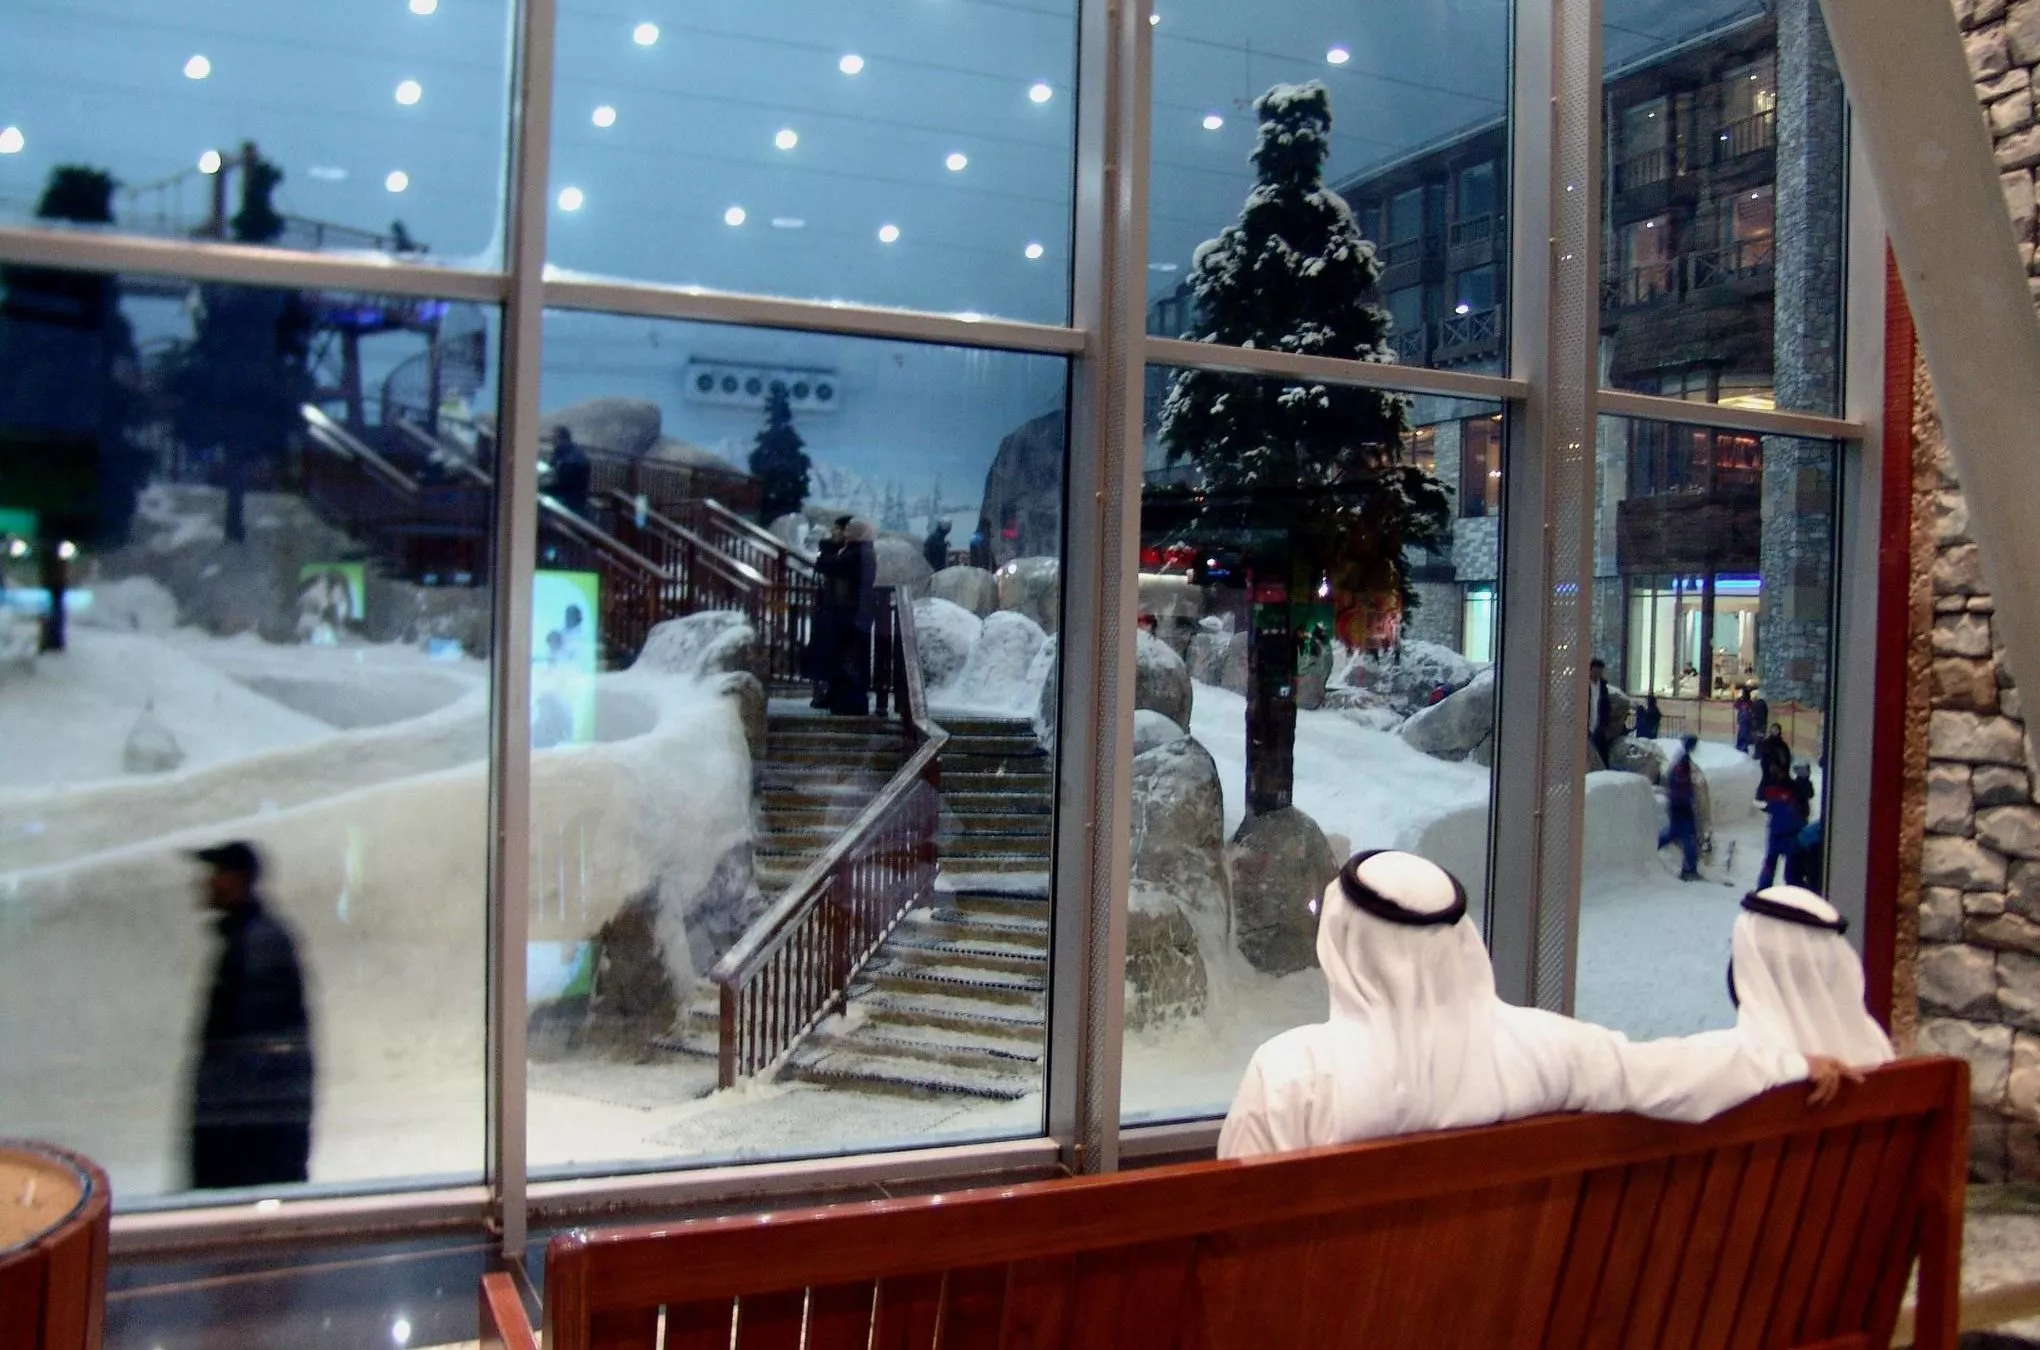 Blick in den Schnee: Der „Mall of the Emirates“ ist eine künstlich beschneite Ski-Piste angeschlossen - falls jemand zwischen den Einkäufen mal eben auf Brettern talwärts wedeln möchte